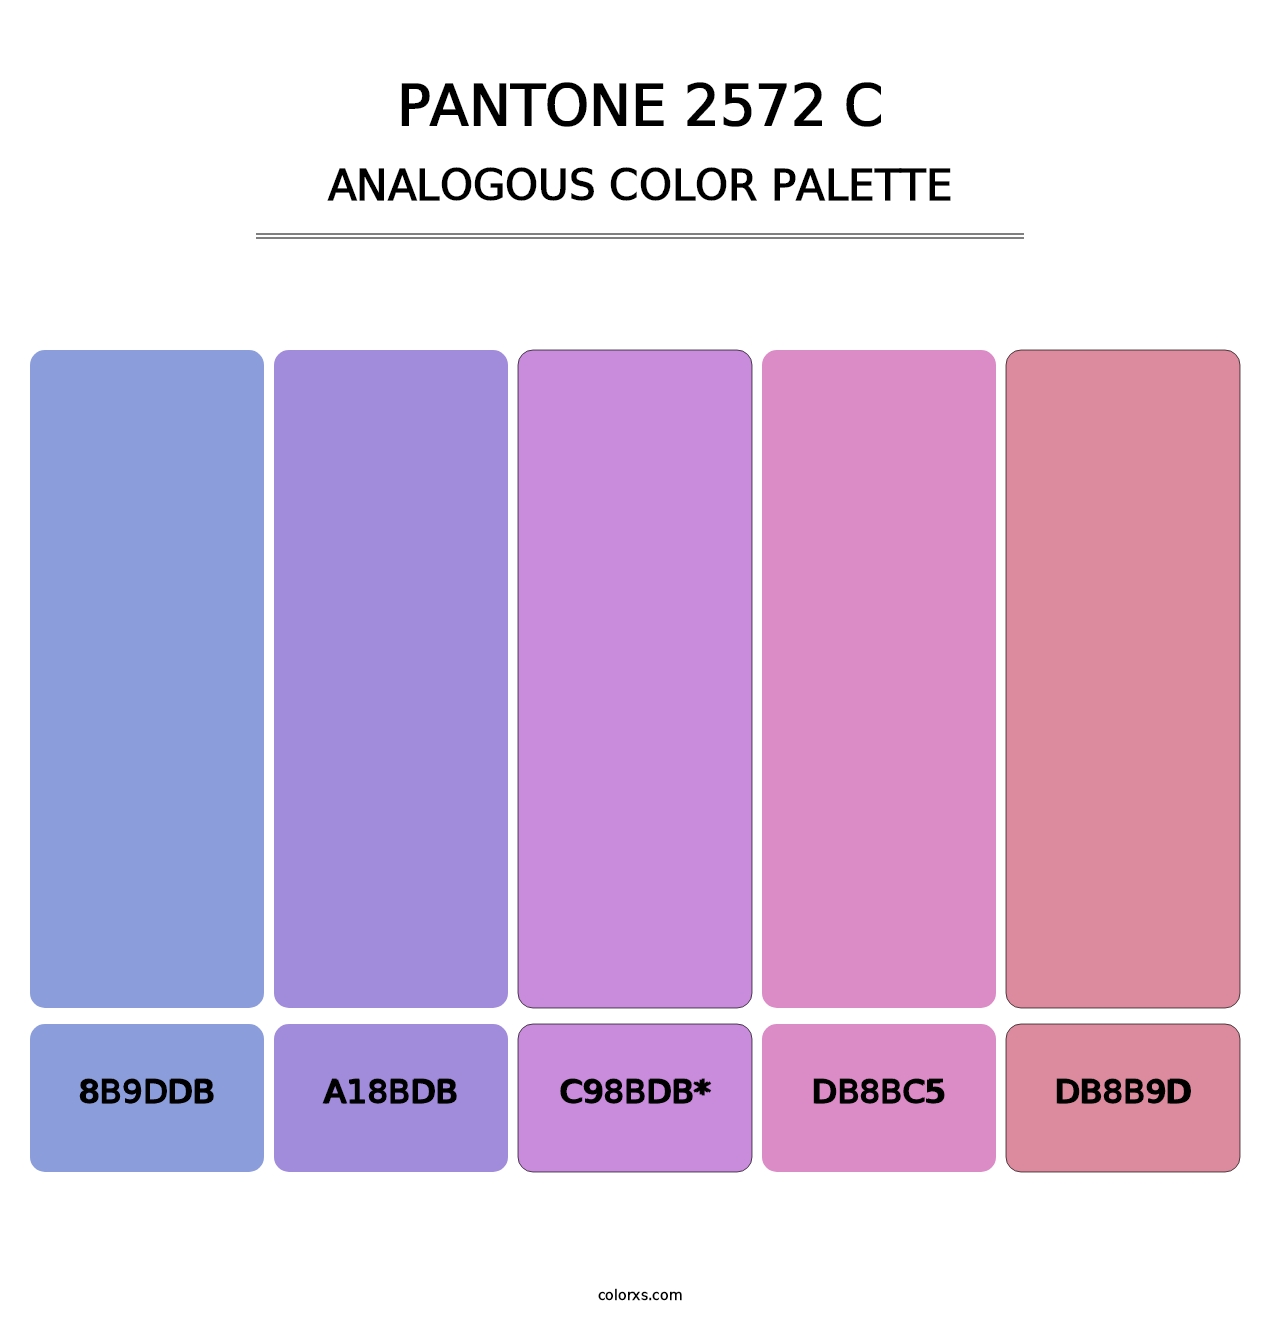 PANTONE 2572 C - Analogous Color Palette